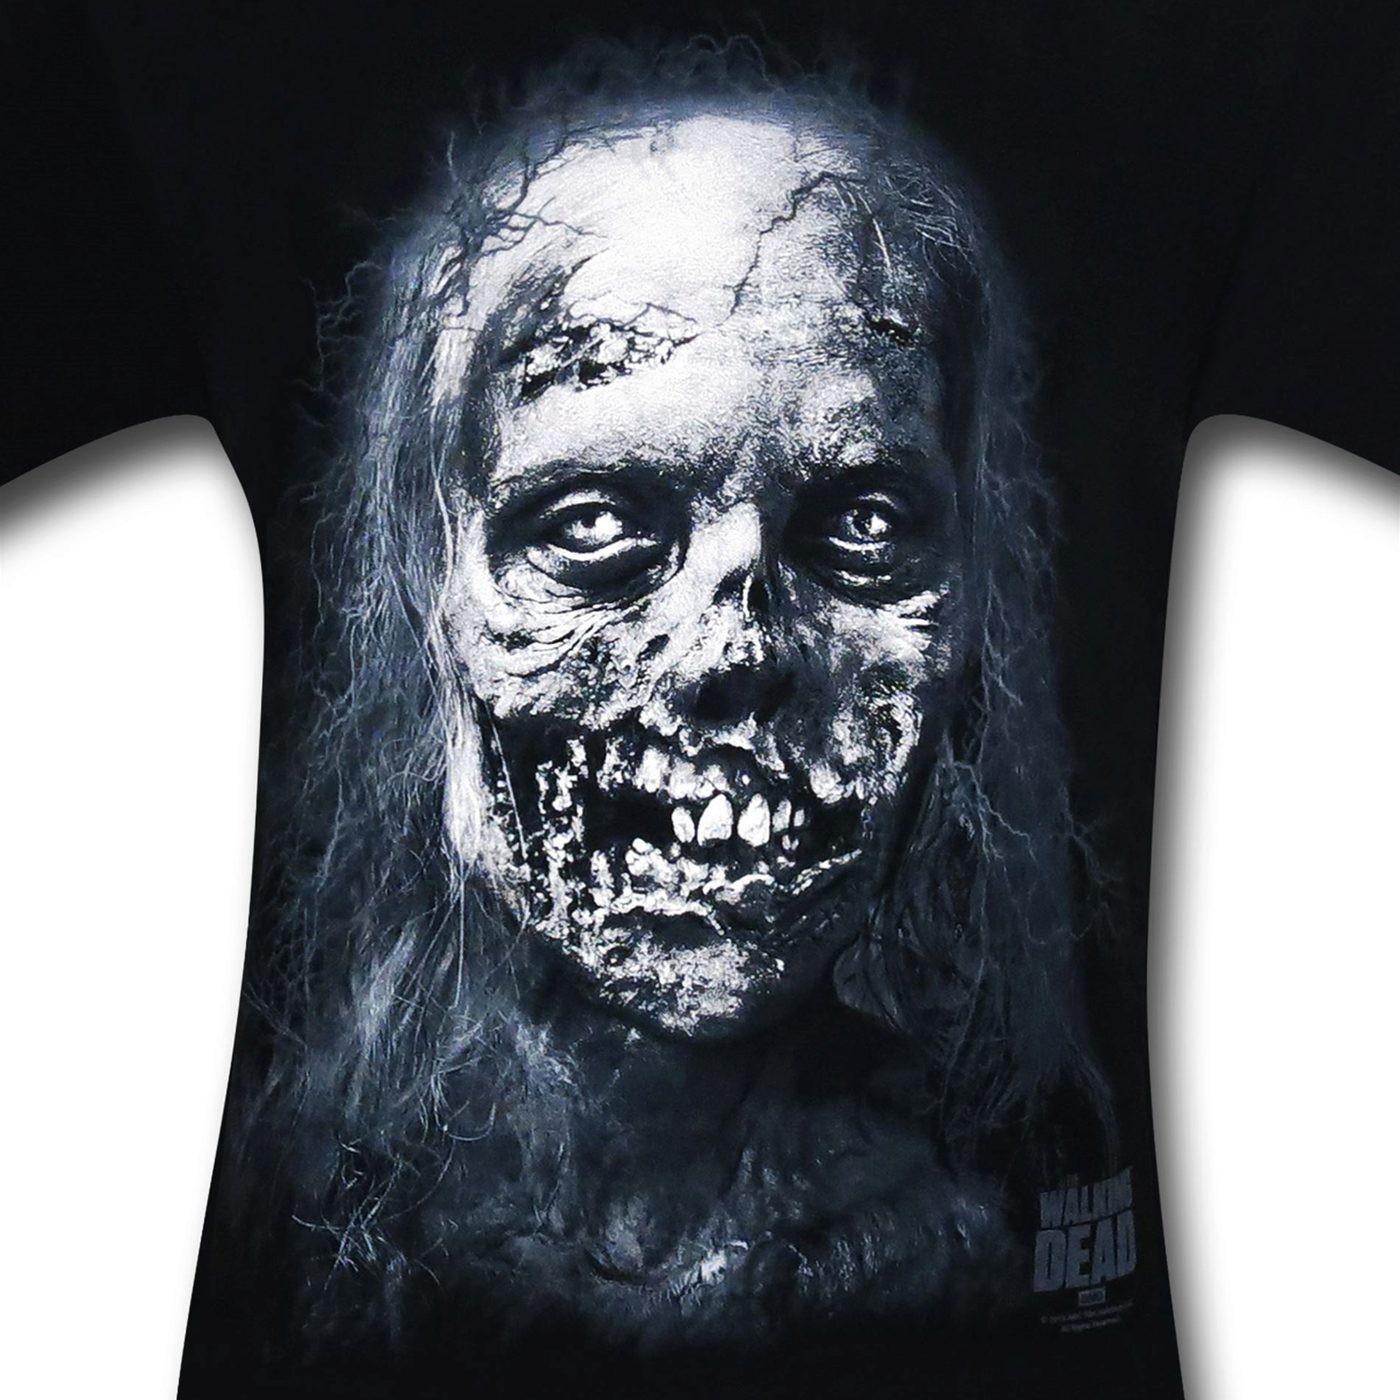 Walking Dead Puffy Zombie T-Shirt